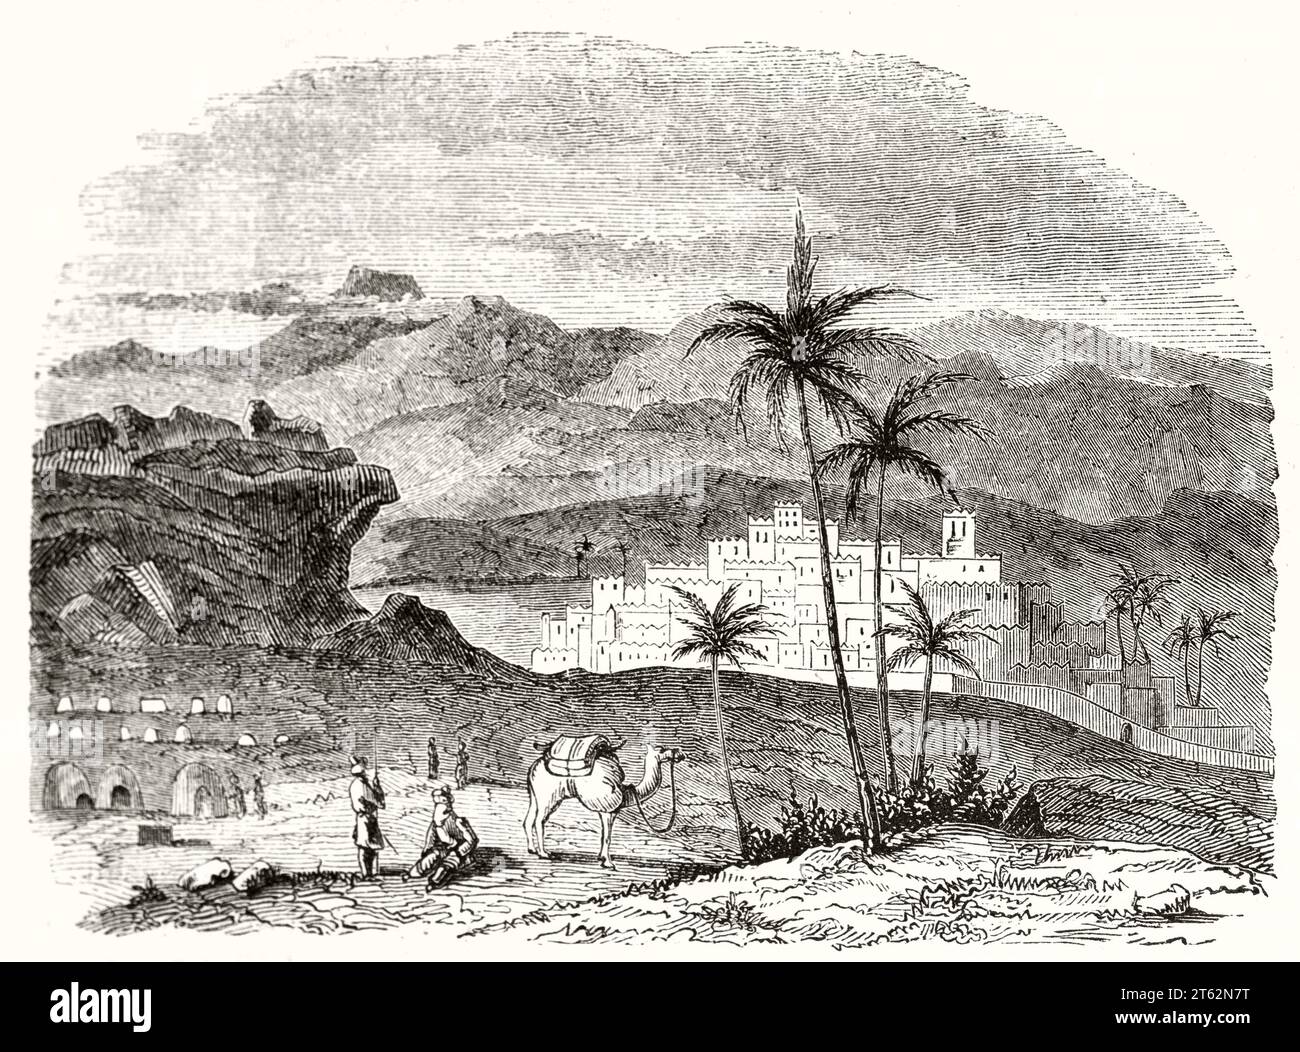 Vecchia vista di Ghrat (?) Sahara centrale. Da autore non identificato, publ. Su Magasin Pittoresque, Parigi, 1849 Foto Stock